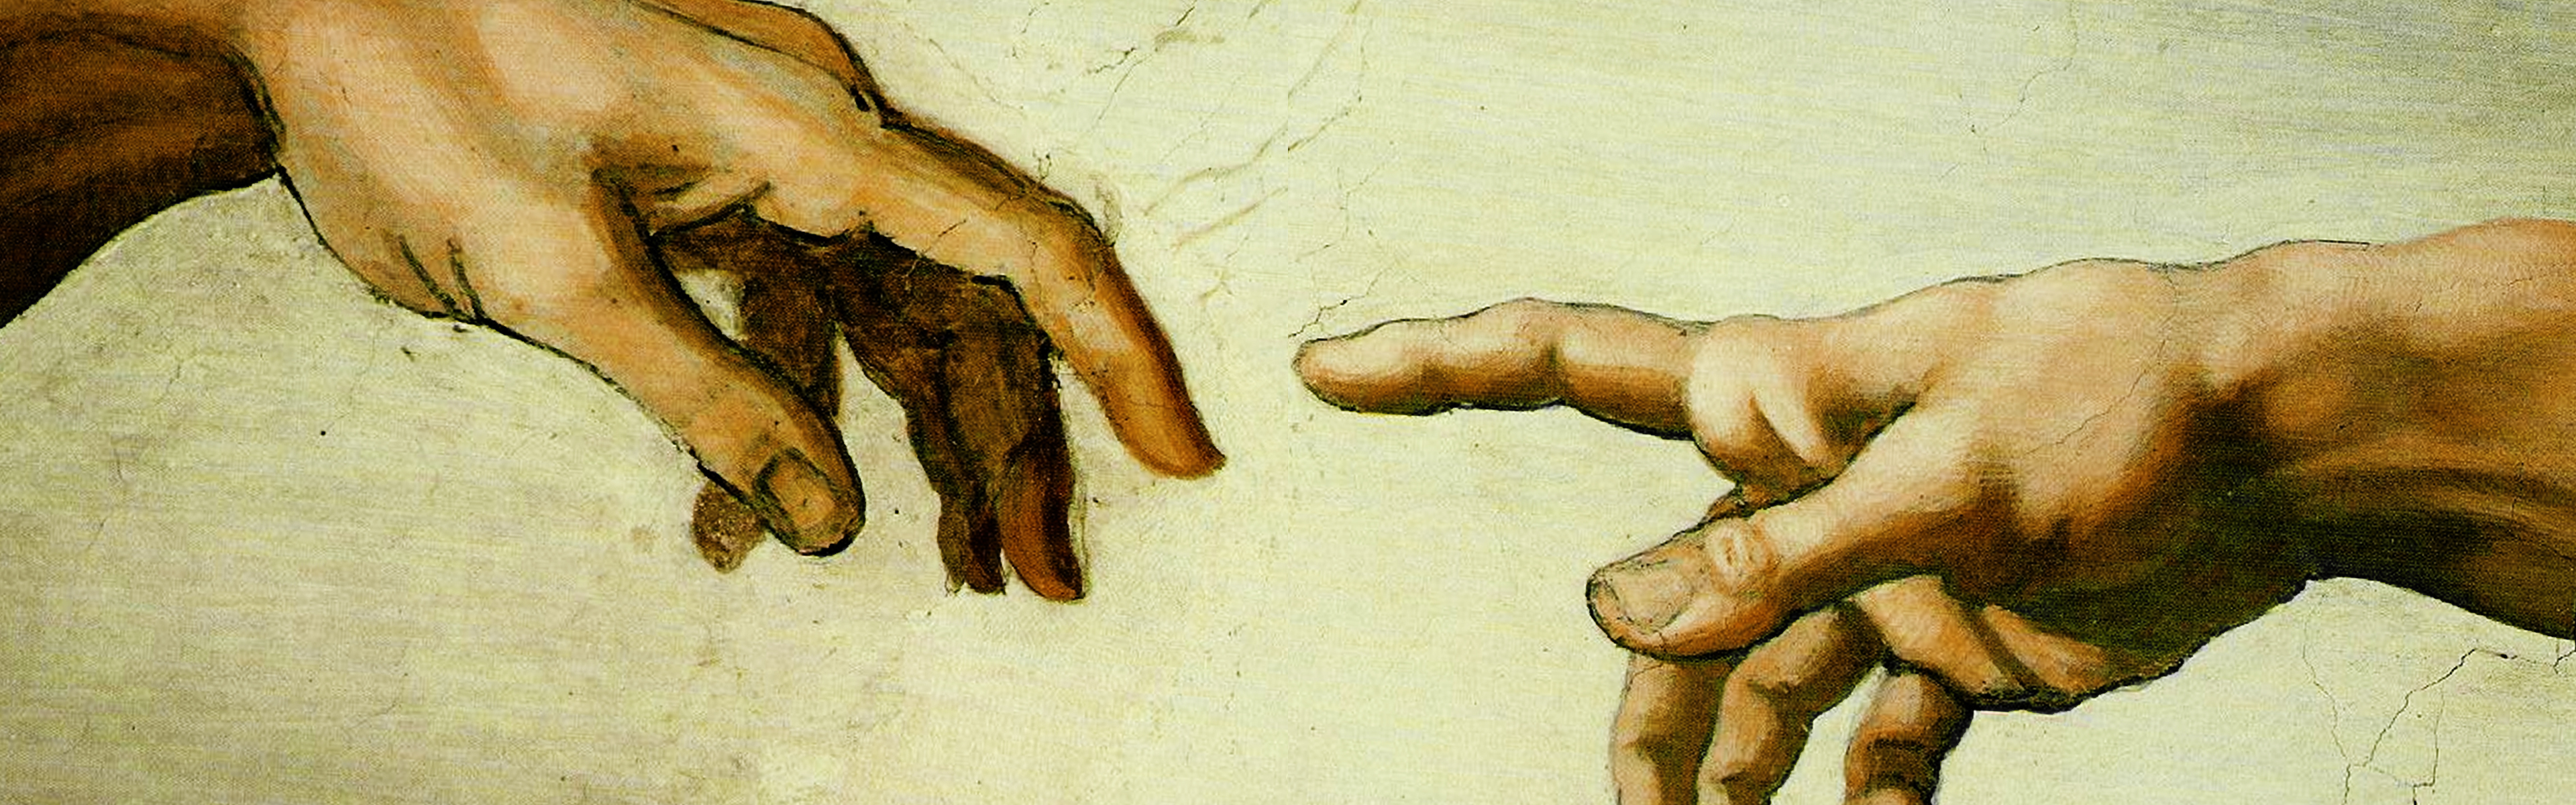 paintings, hands, Michelangelo, The Creation of Adam - desktop wallpaper